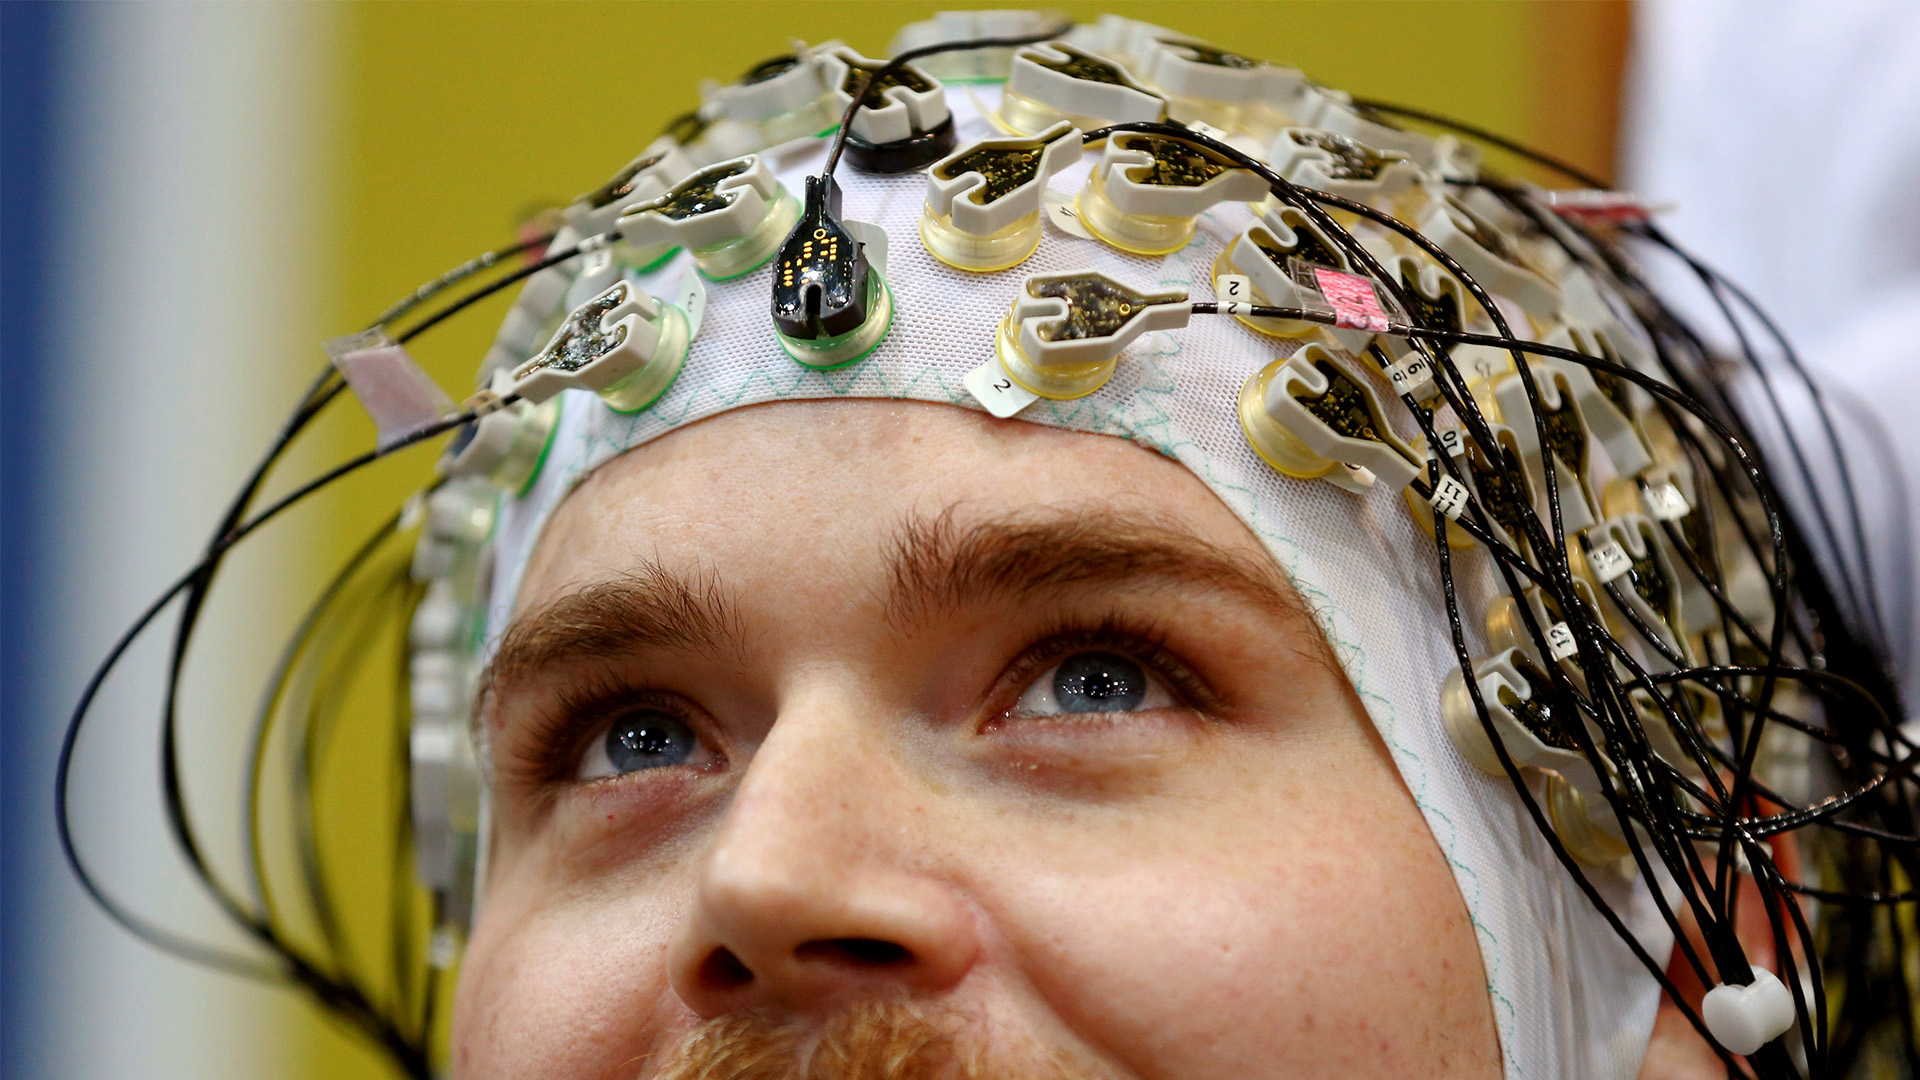 Los hackers pueden robarte la contraseña a través de tus ondas neuronales